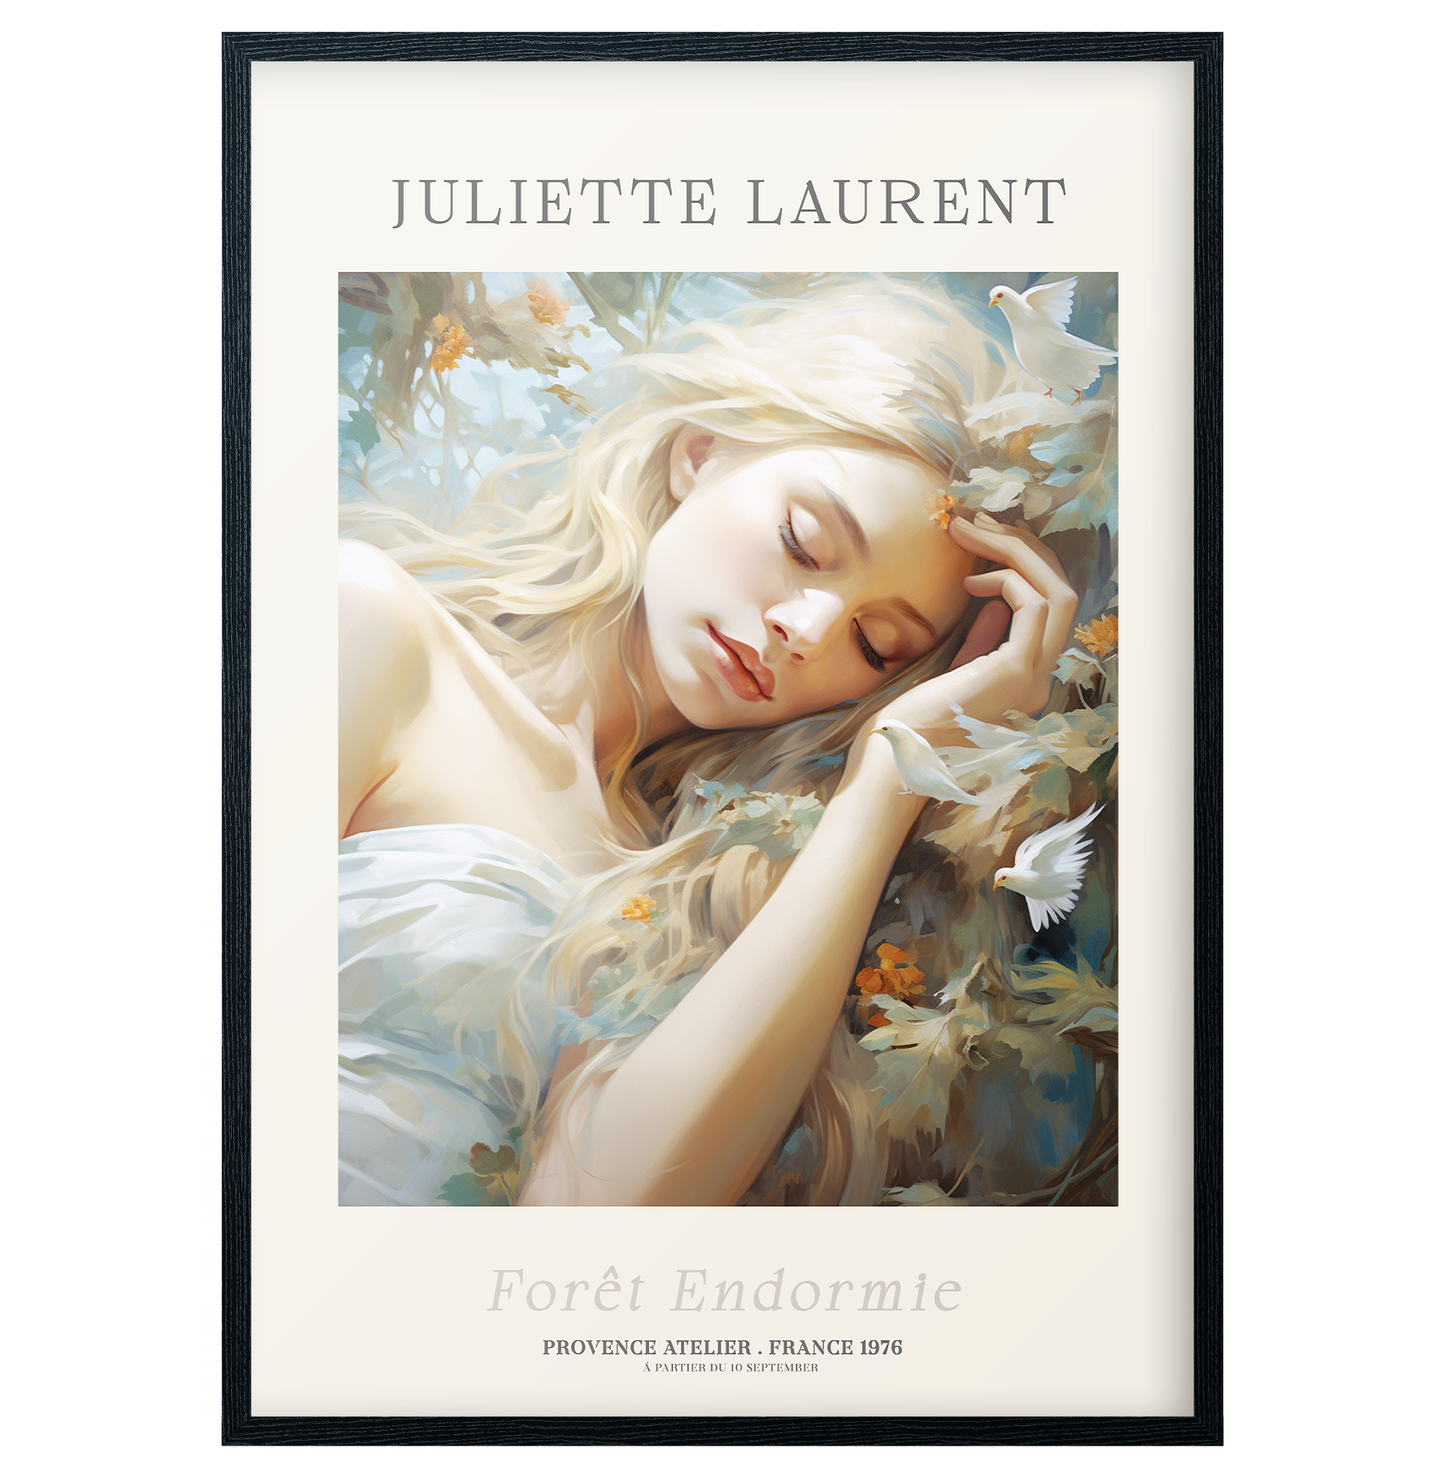 Juliette Laurent - Forêt Endromie